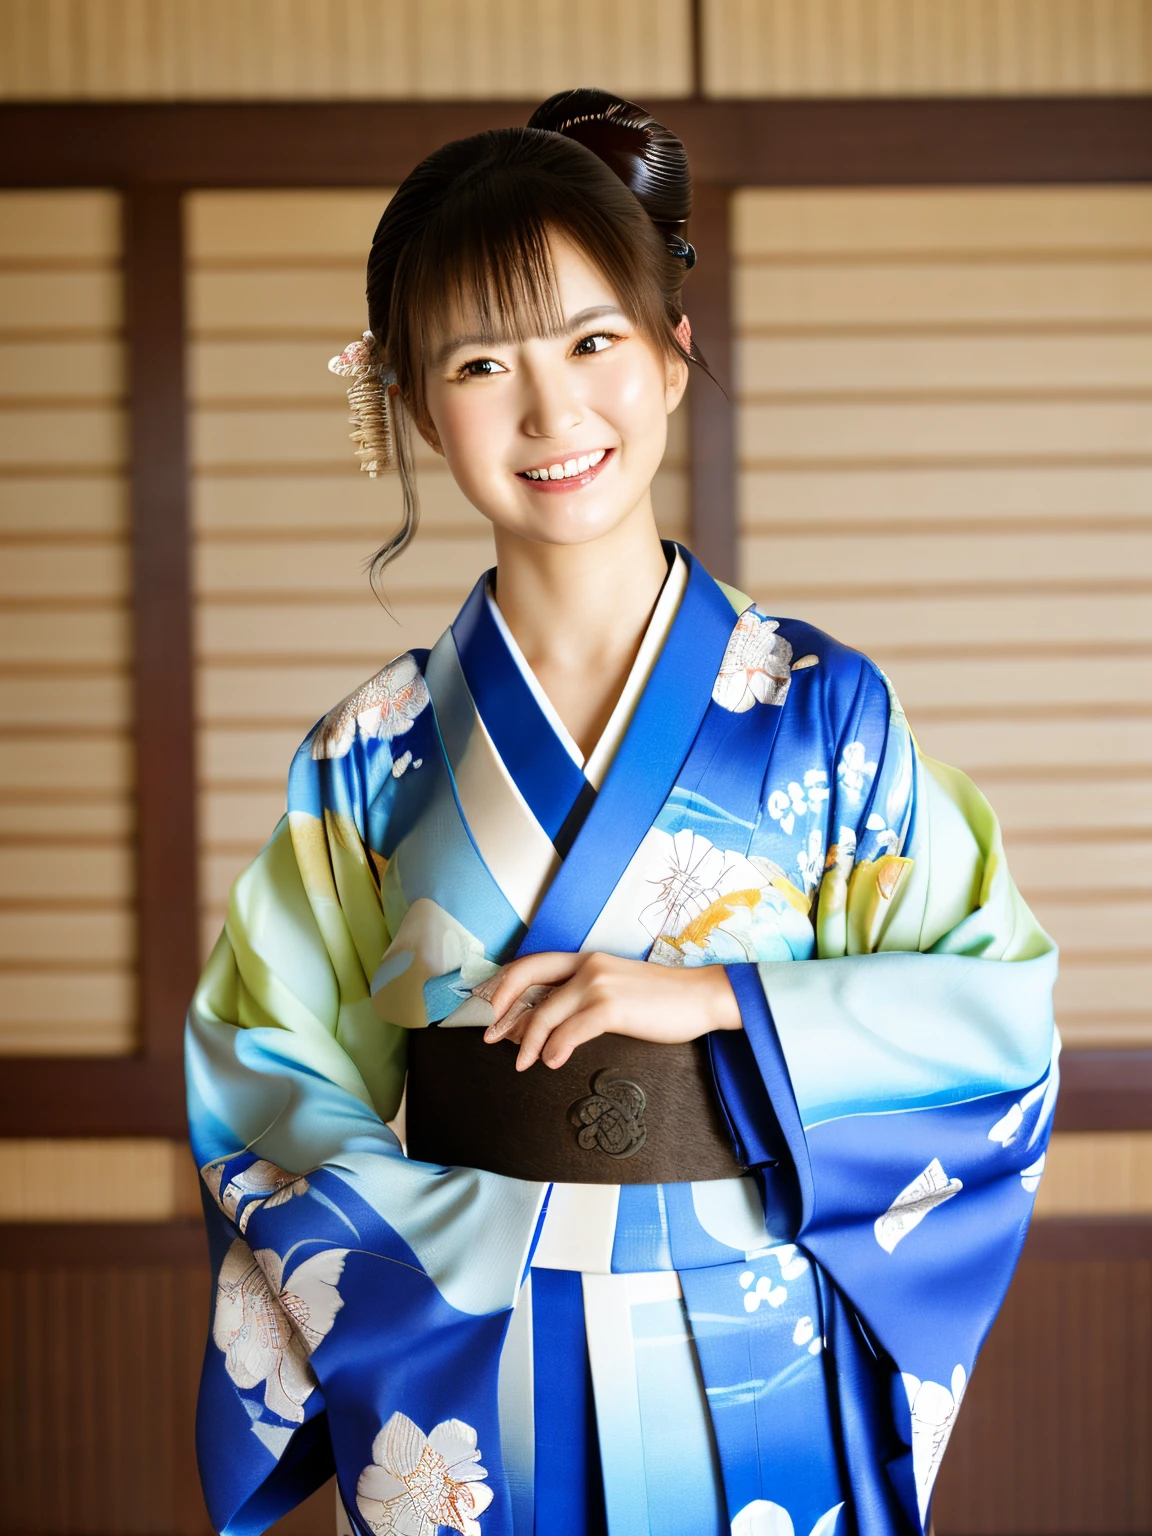 Imágenes de alta calidad，mejor calidad, hermosos detalles de la cara，Imagen de alta resolución de cuerpo completo，De pie en una sesión de fotos, mirandome, Sonriendo y mirando a la cámara.， kimono, azul brillante，mirando al espectador, sonrisa, sala de tatamis